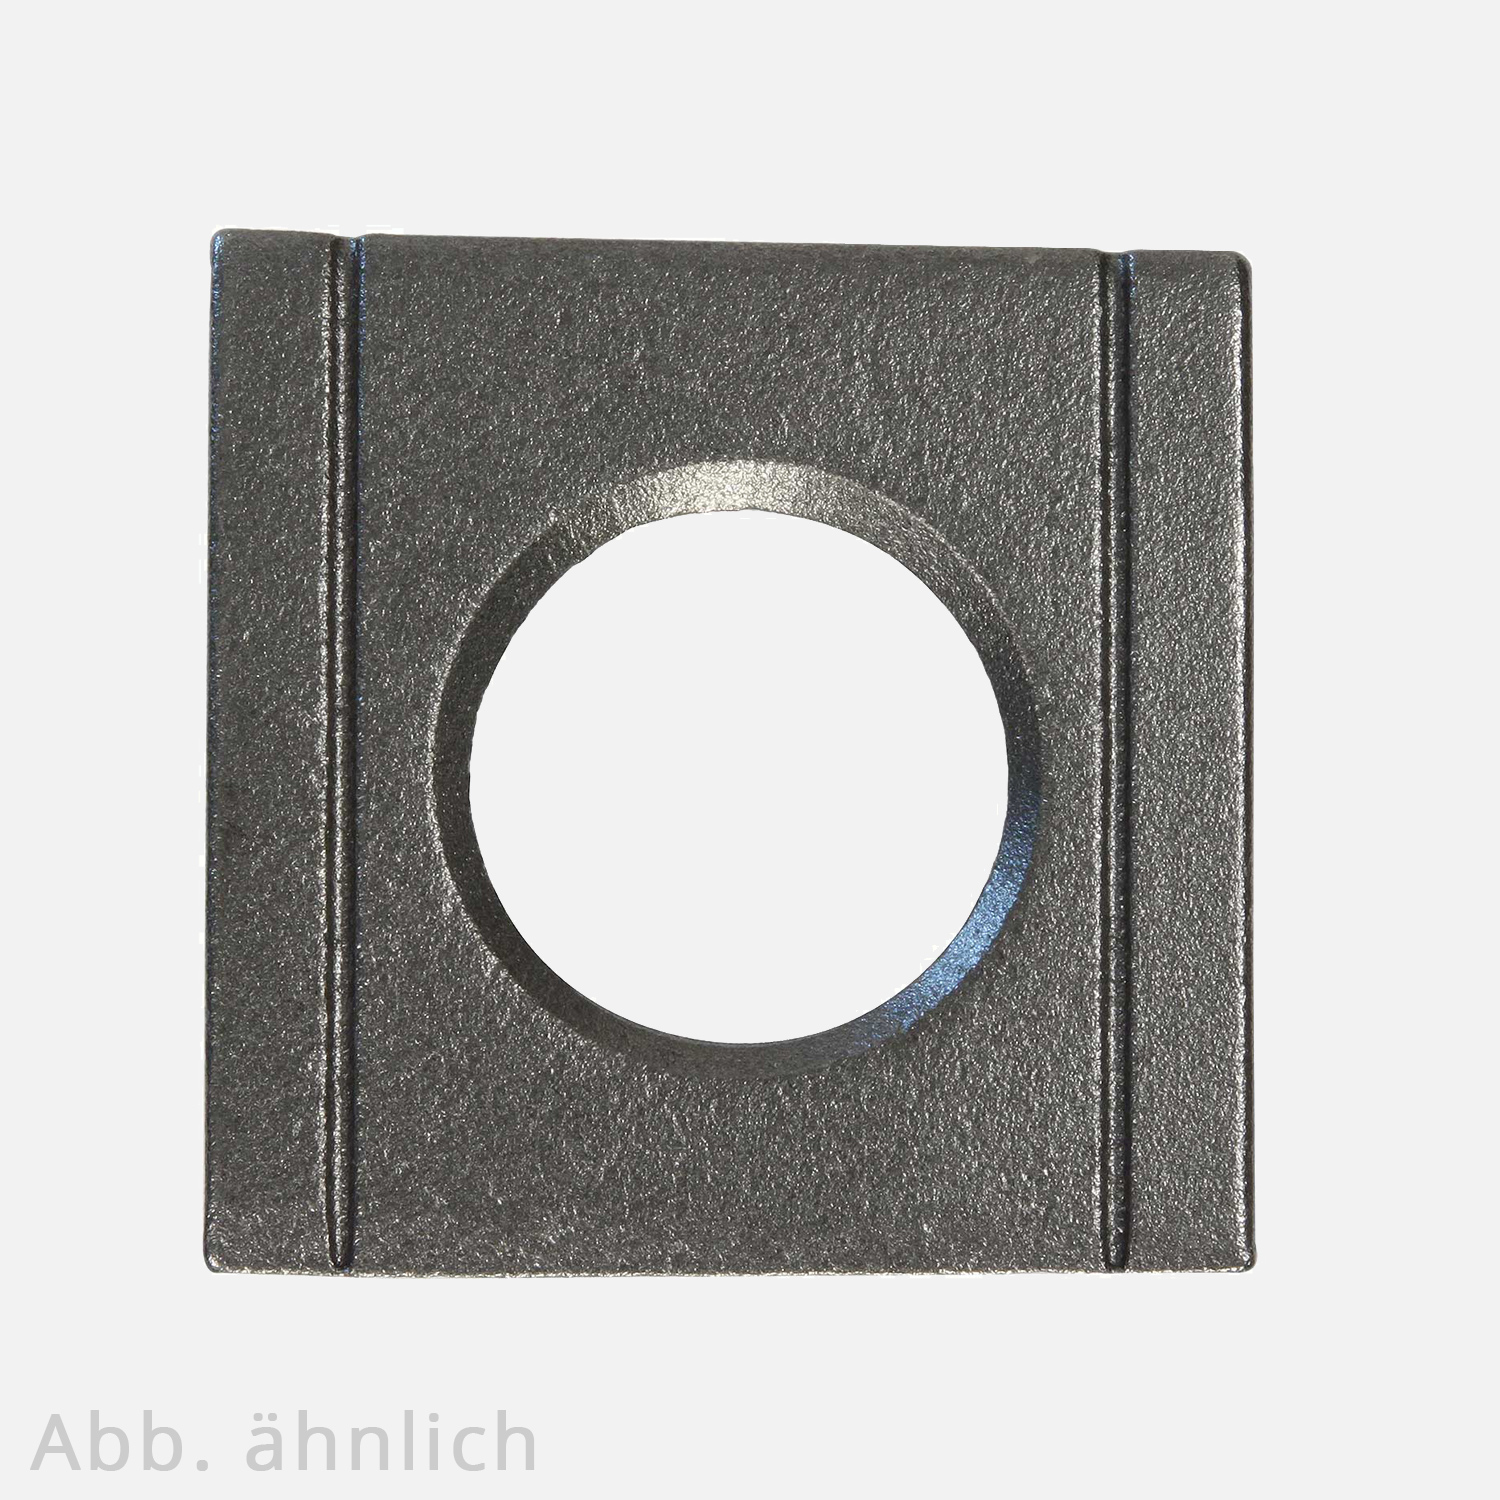 1 Vierkantscheibe - keilförmig 8% - 25 mm - DIN 6918 - Stahl vergütet